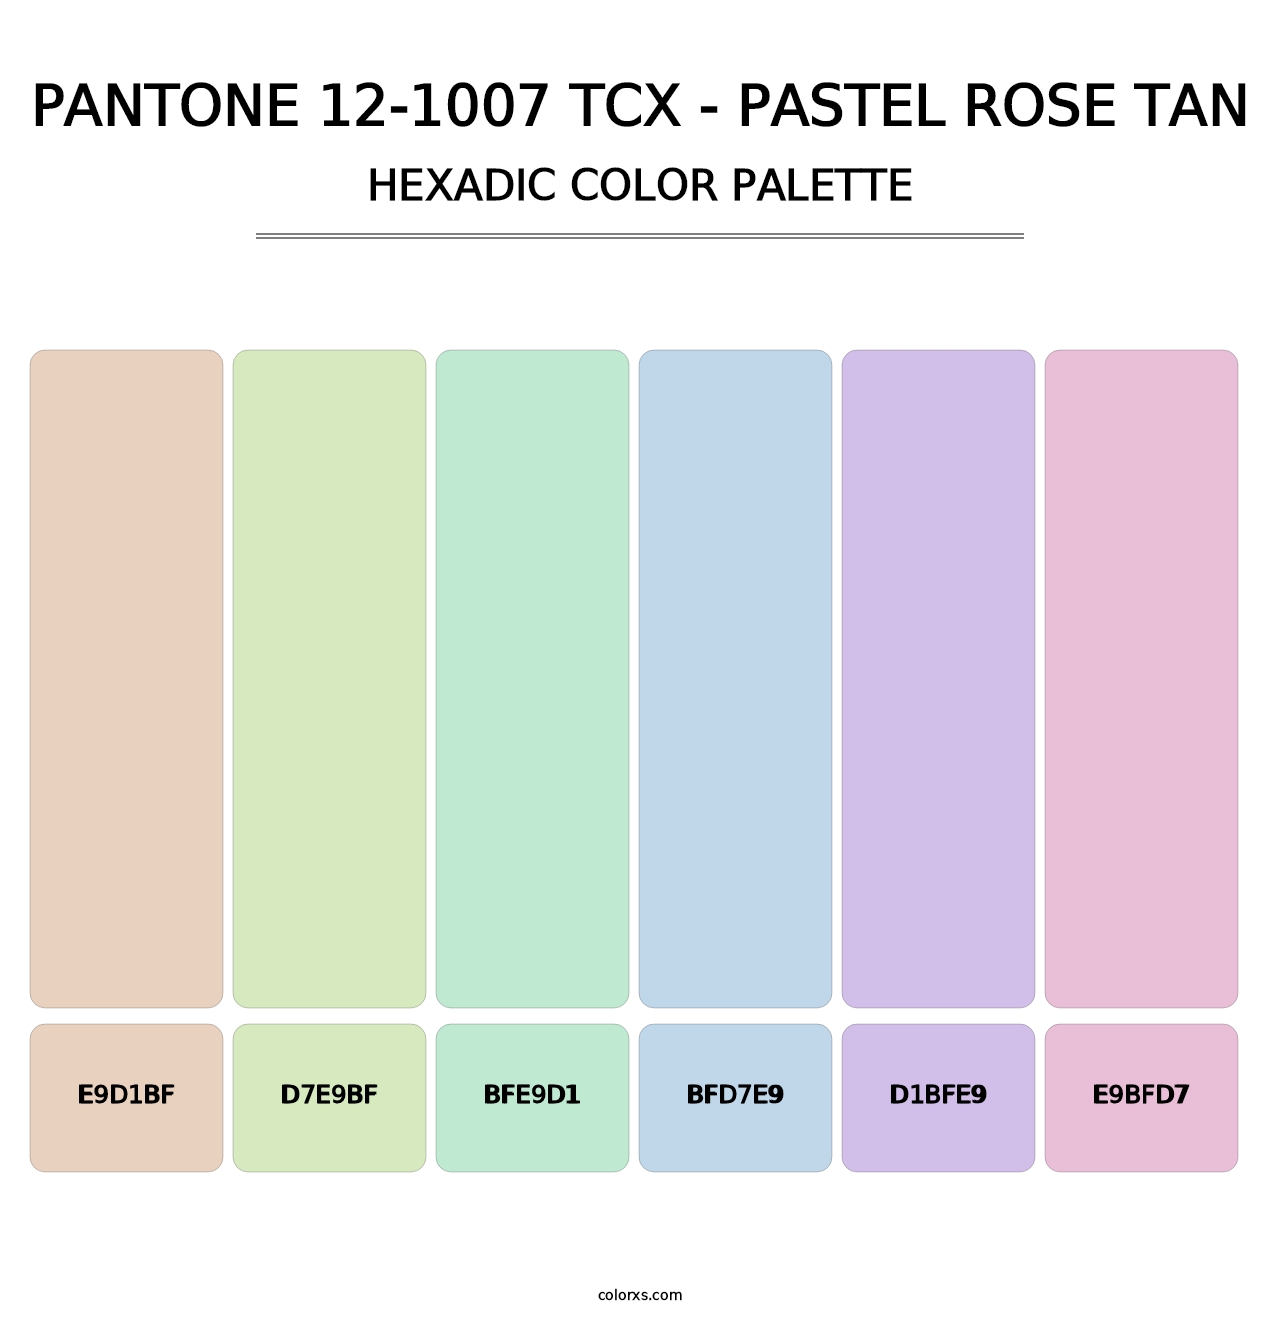 PANTONE 12-1007 TCX - Pastel Rose Tan - Hexadic Color Palette